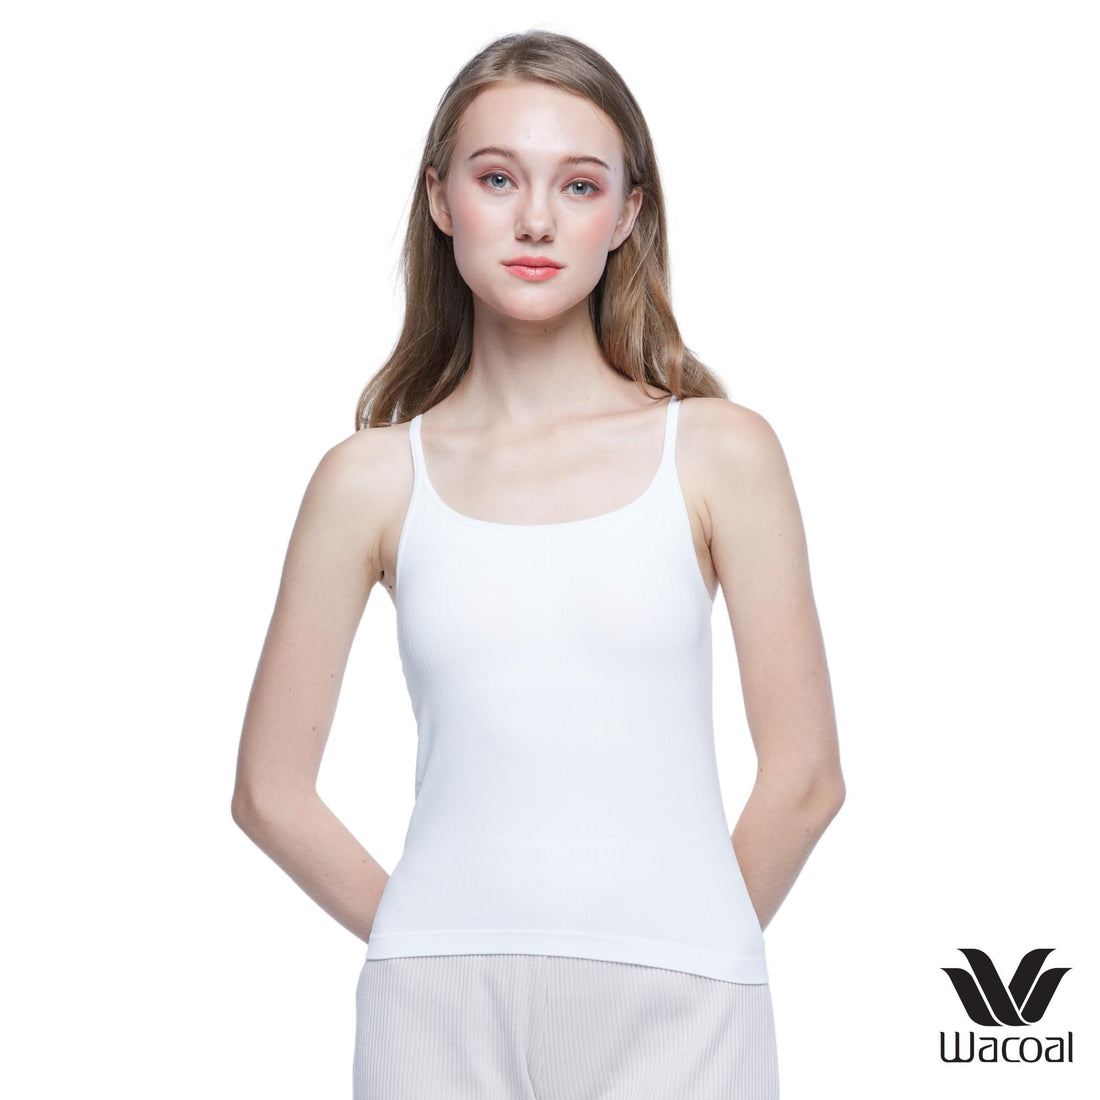 Wacoal Mood Comfy เสื้อสายเดี่ยว มีบราในตัว วาโก้มู้ด รุ่น WH4M04 สีขาว (WH)